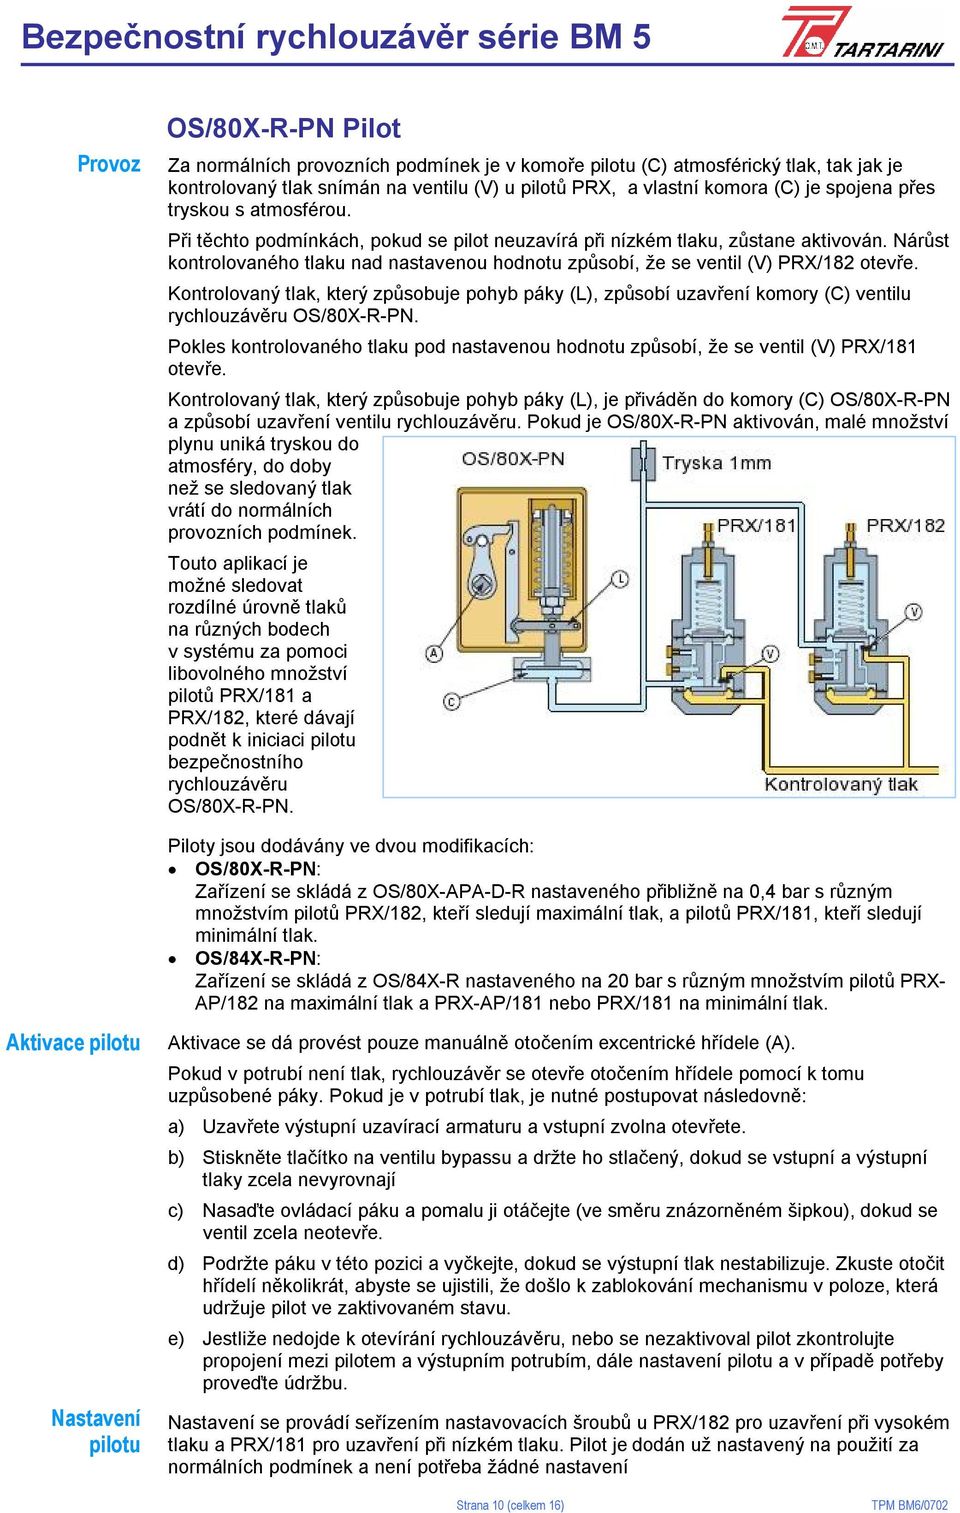 Nárůst kontrolovaného tlaku nad nastavenou hodnotu způsobí, že se ventil (V) PRX/182 otevře.